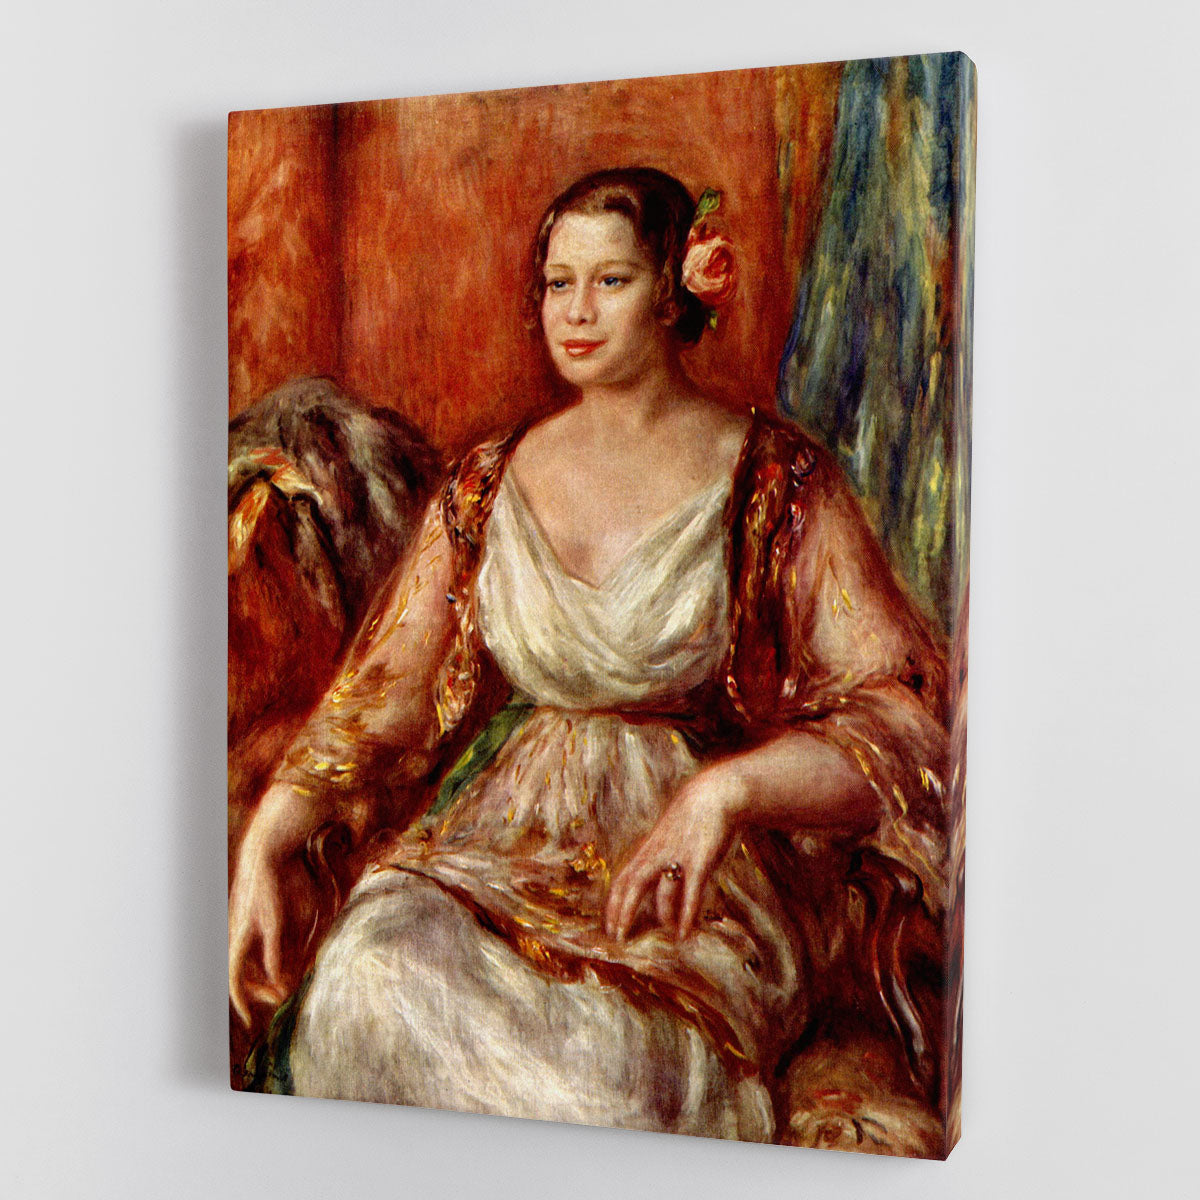 Portrait of Tilla Durieux by Renoir Canvas Print or Poster - Canvas Art Rocks - 1